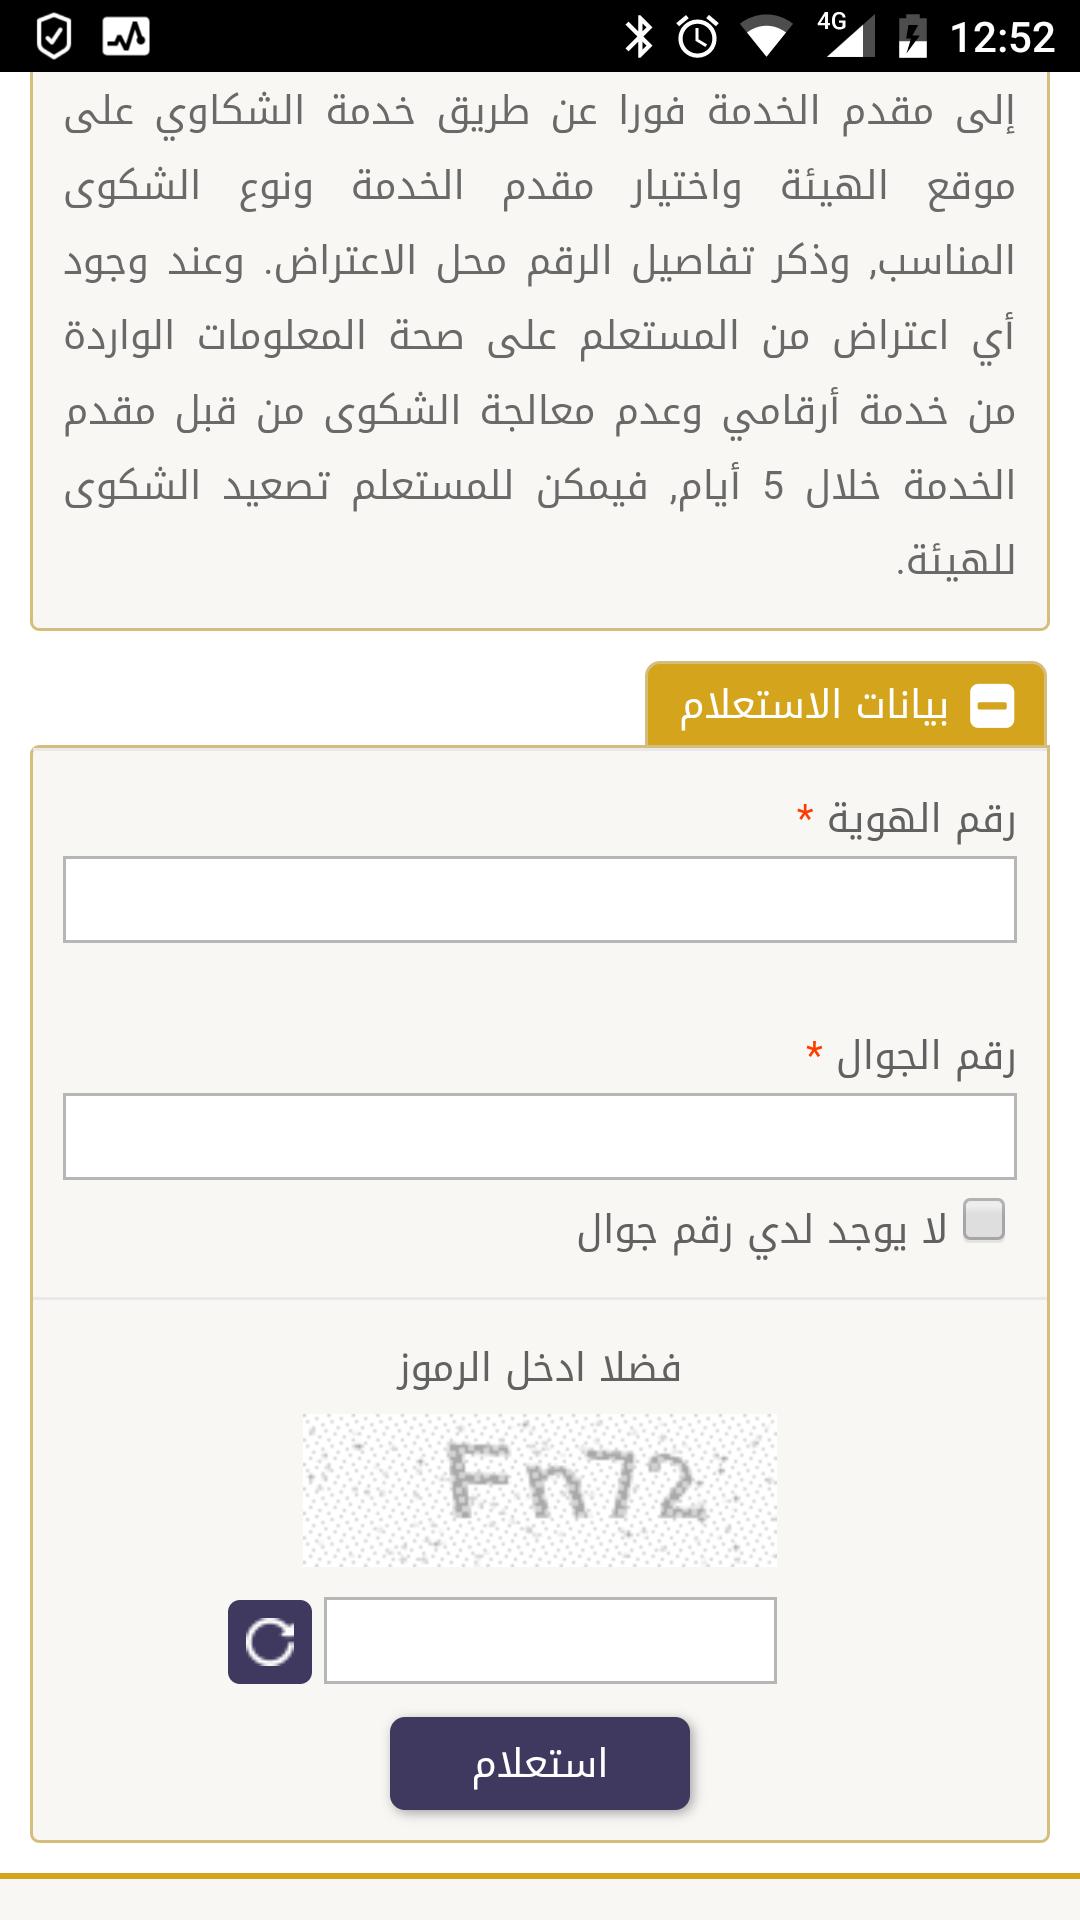 مقيم سعودية for Android - APK Download